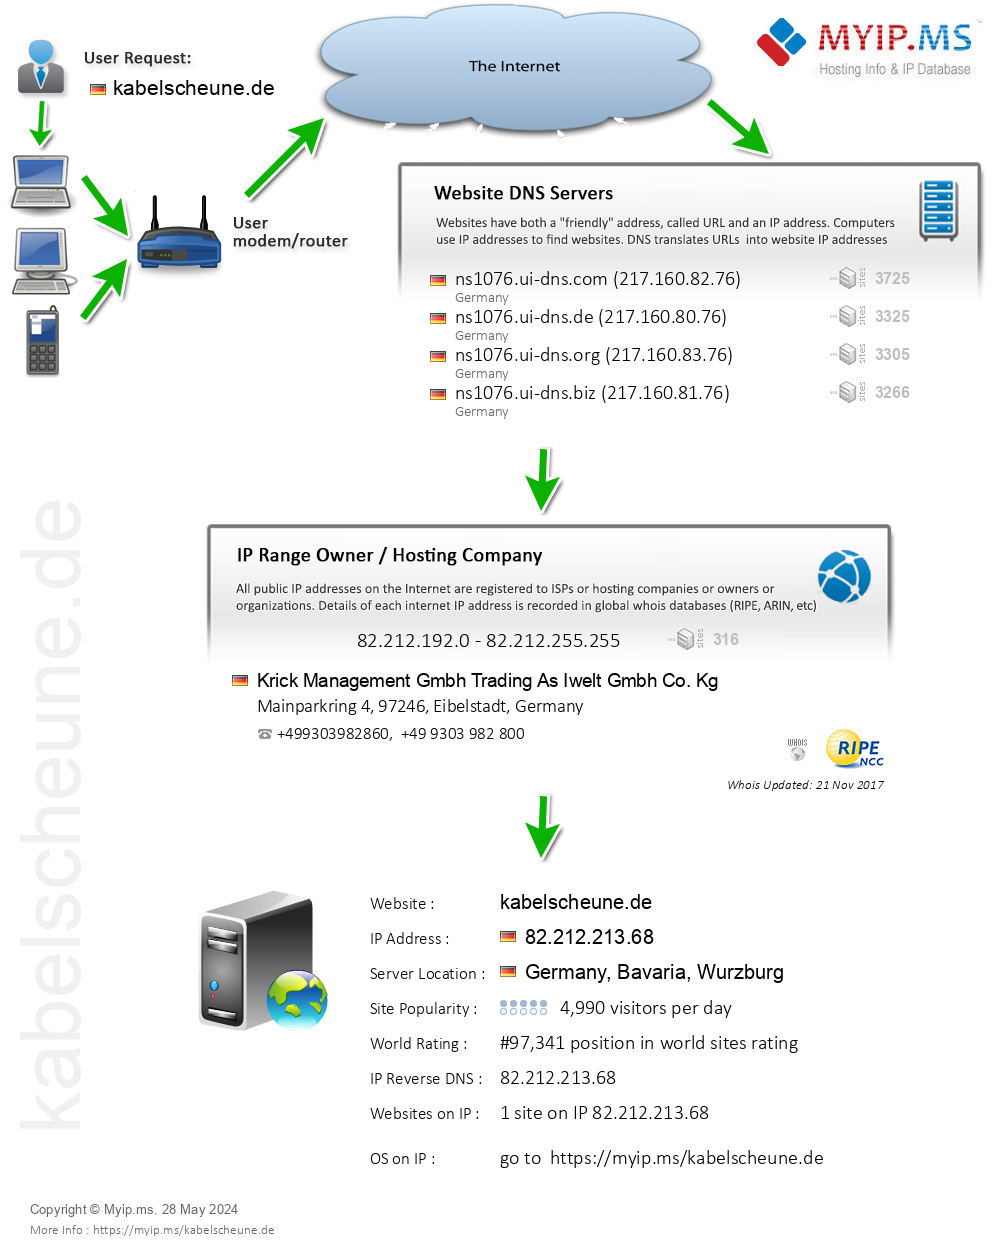 Kabelscheune.de - Website Hosting Visual IP Diagram